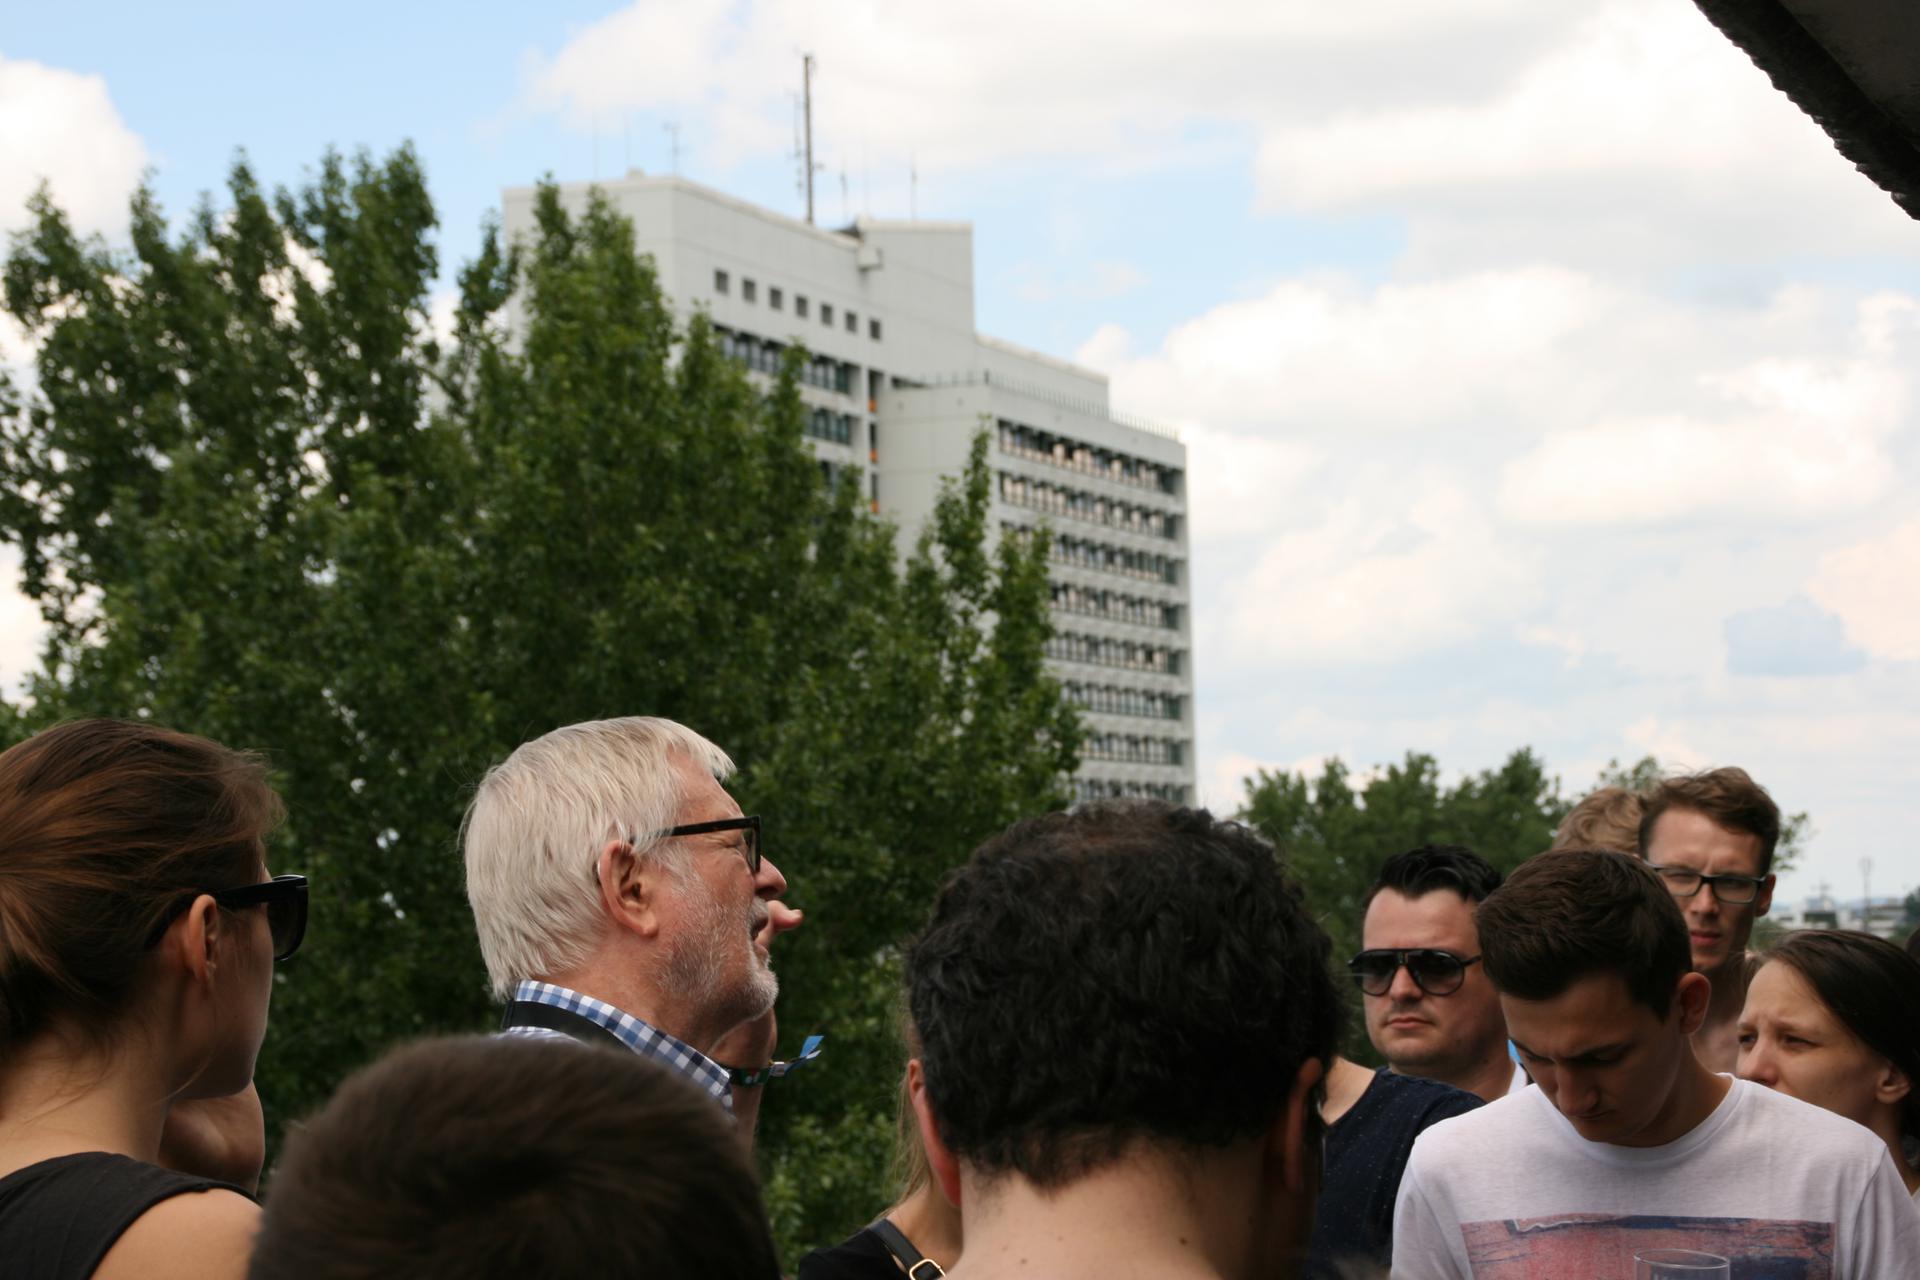 Helmut Gierke auf dem MKH-Dach umringt von etwa 10 (sichtbaren) Personen. Im Hintergrund das HSH